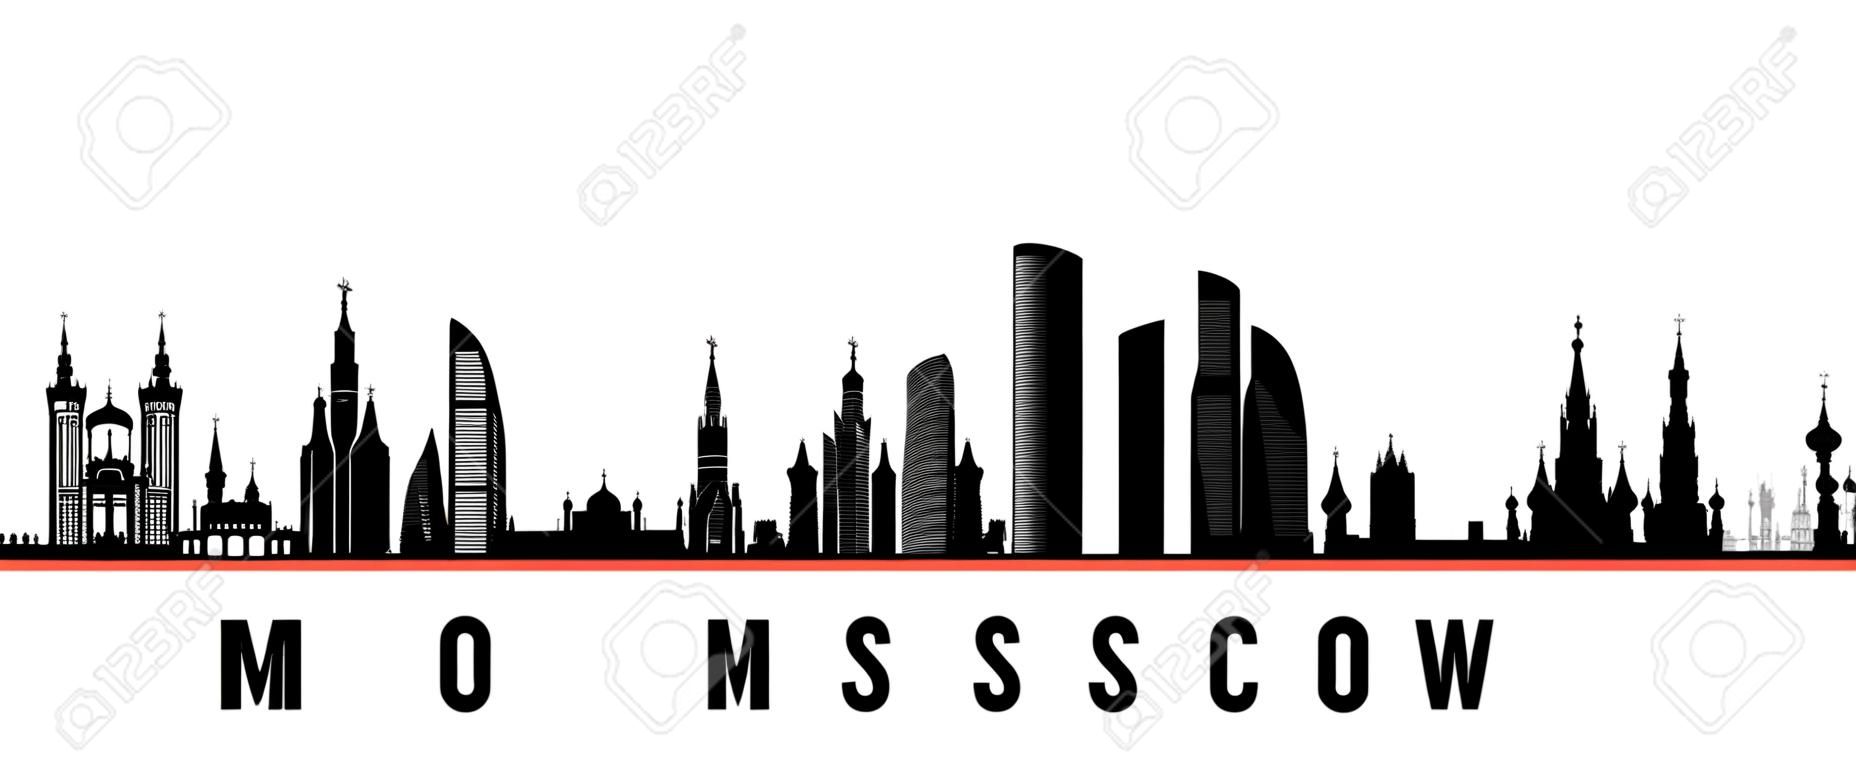 Banner horizontal del horizonte de la ciudad de Moscú. Silueta en blanco y negro de la ciudad de Moscú, Rusia. Plantilla de vector para su diseño.